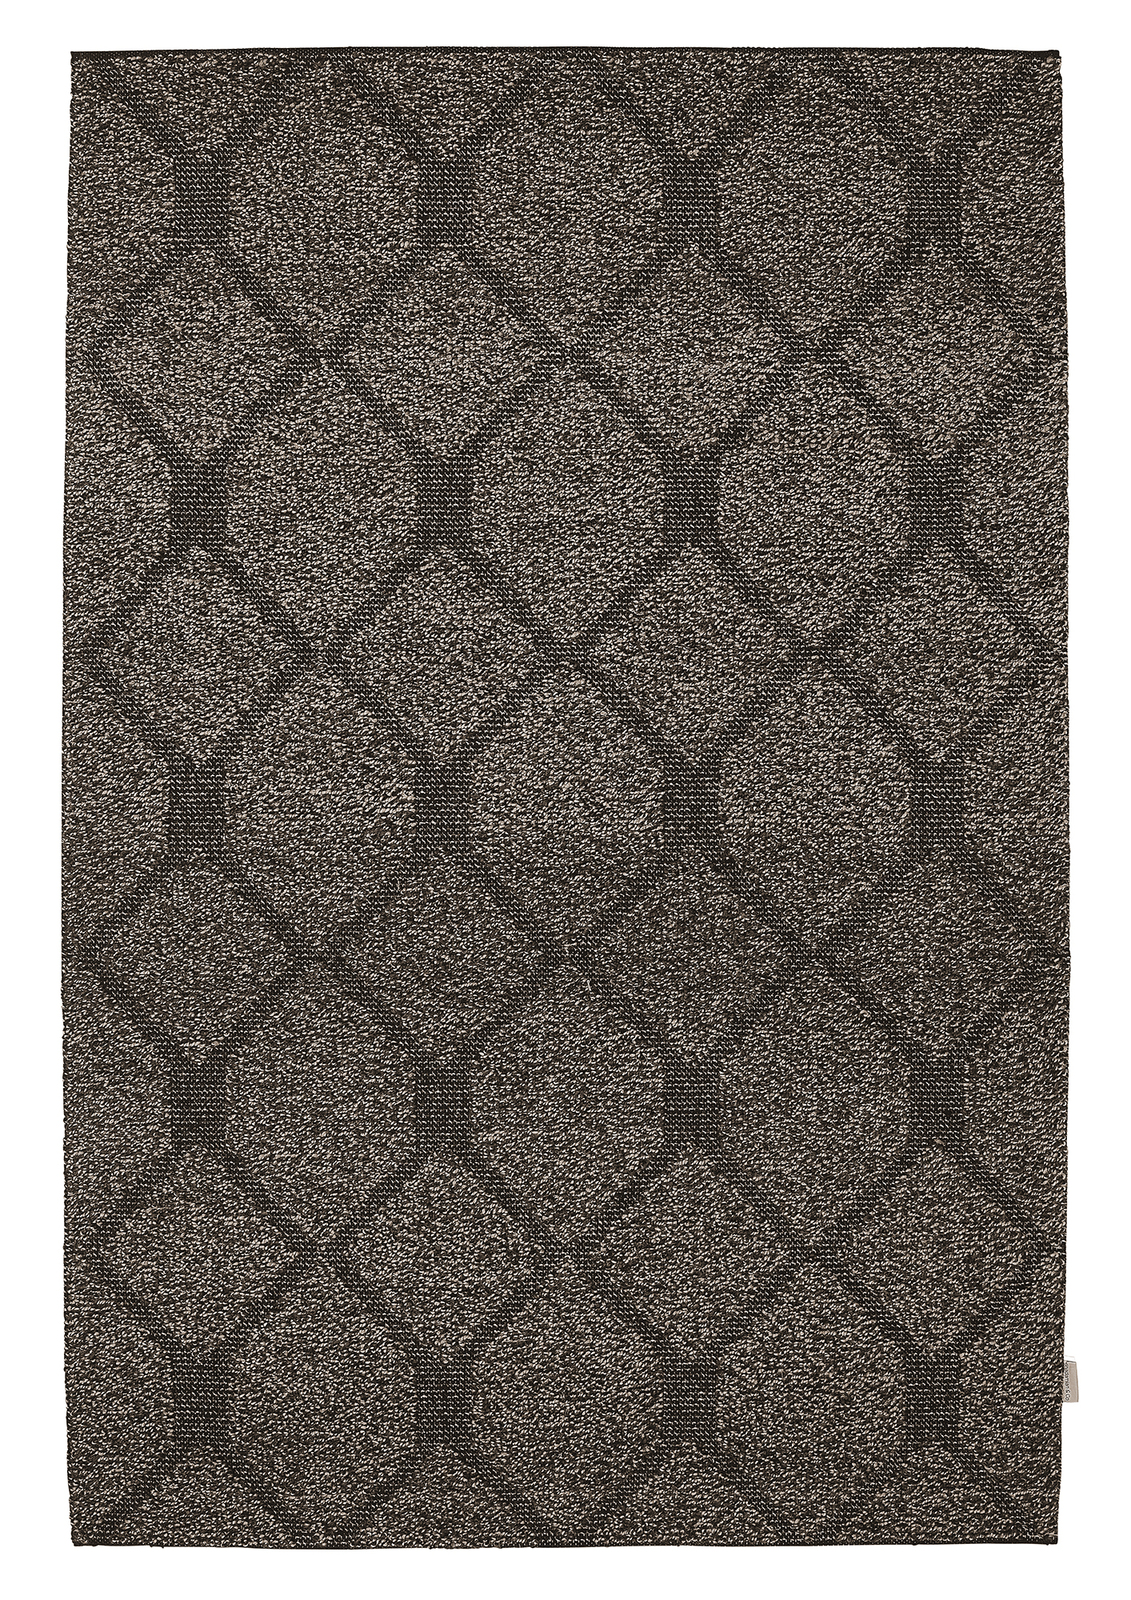 Harmony Flatweave High Low Pile Wool & Viscose Floor Rug Wool 155cm x 225cm Grey Brown